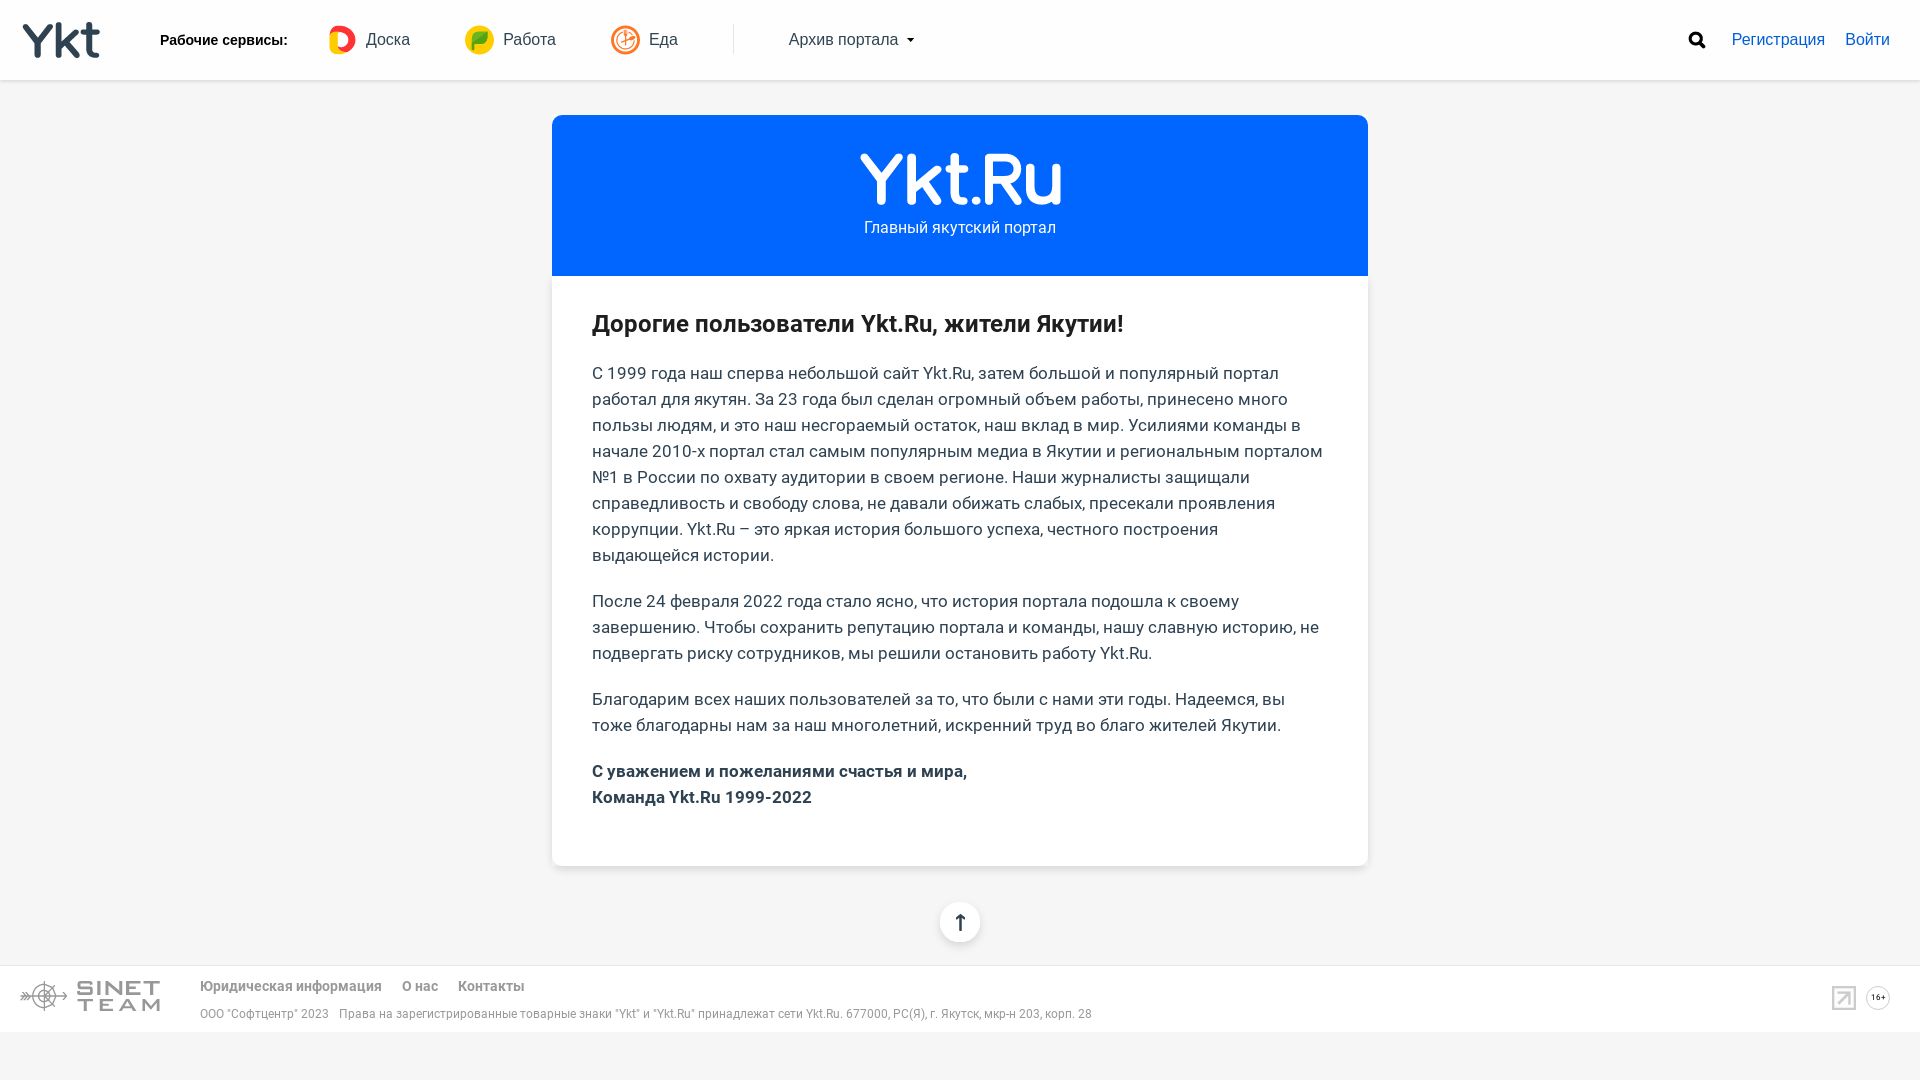 Webseitenstatus ykt.ru ist   ONLINE